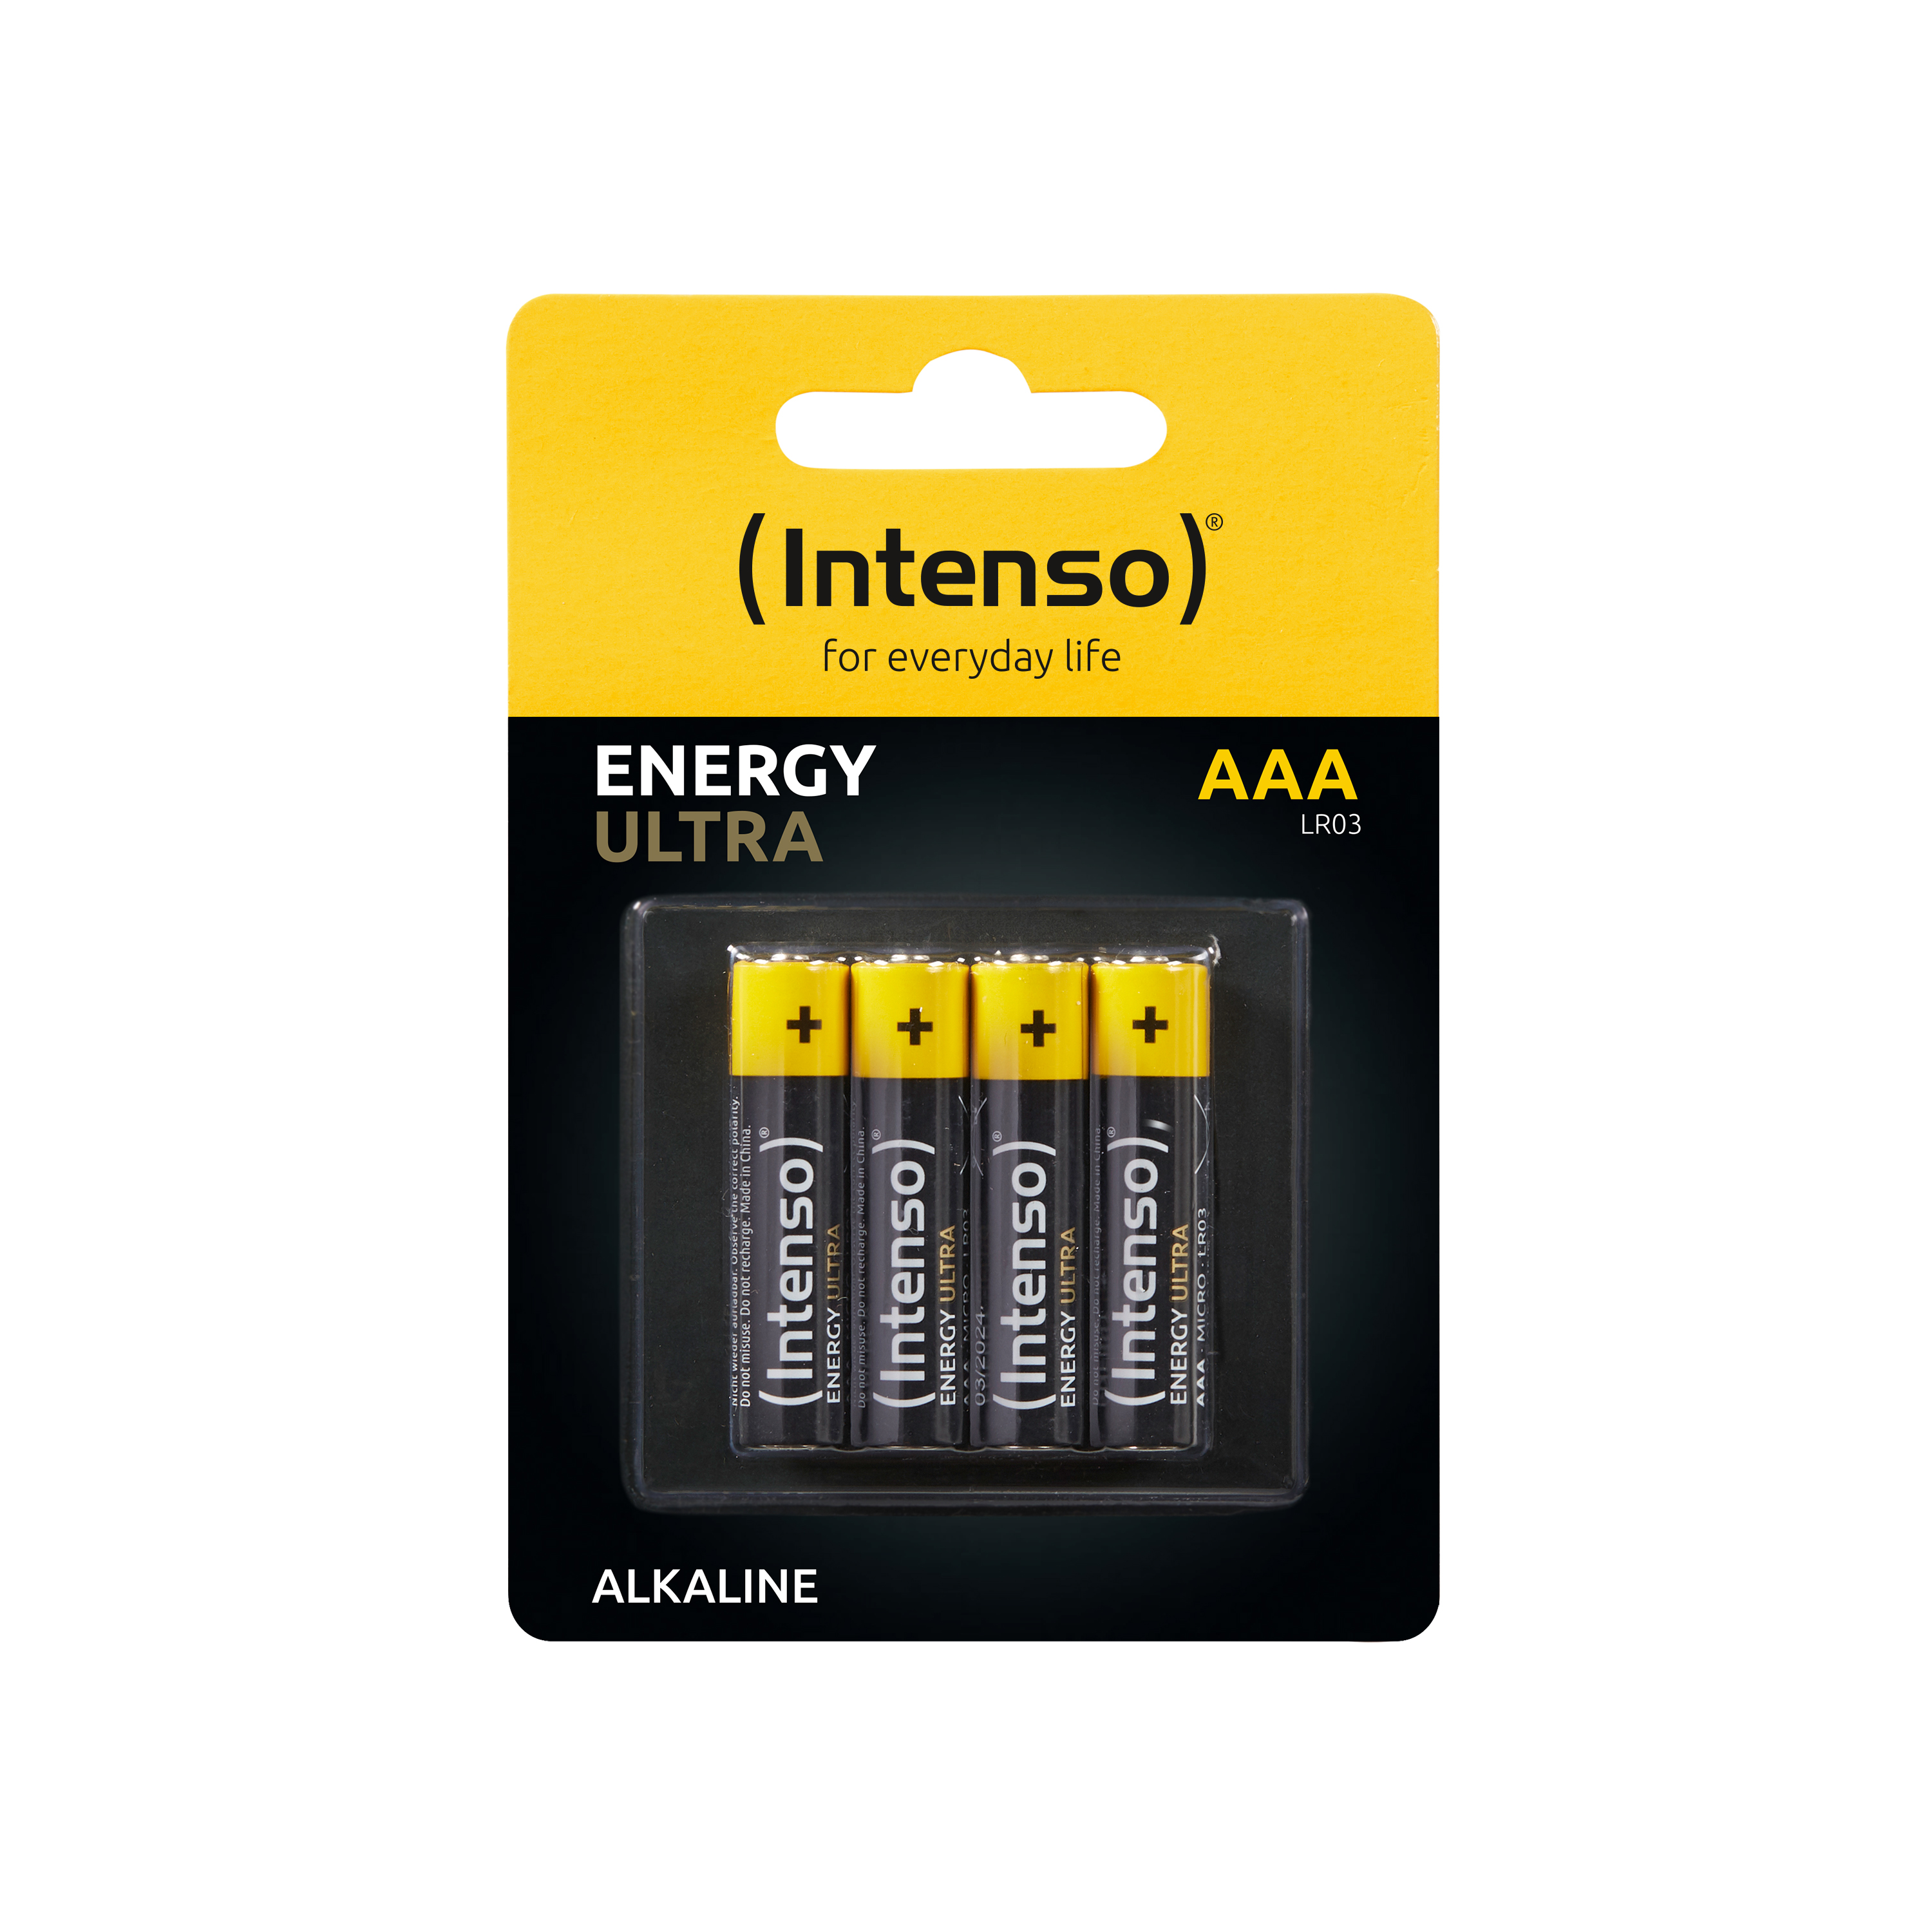 INTENSO Energy Ultra LR03 (Quecksilberfrei), LR03, Manganese Micro Batterie AAA AAA, Pack 4er Alkaline